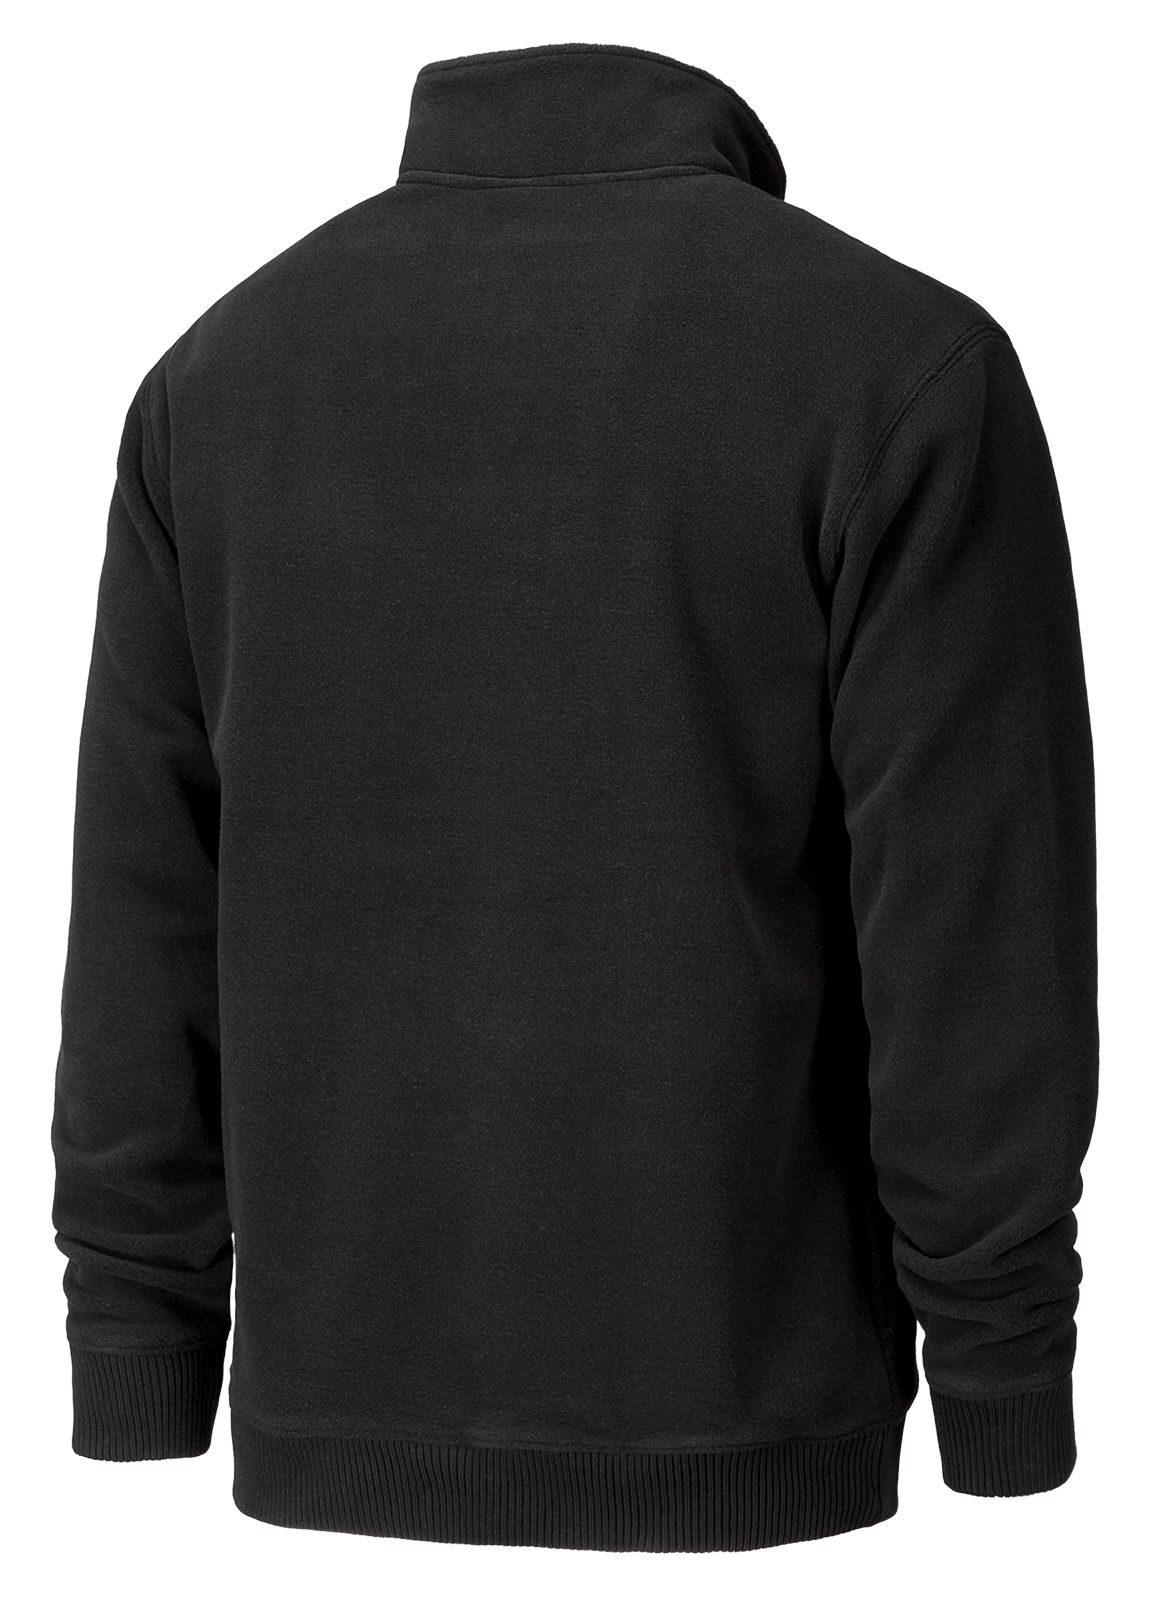 Rhinelander 1/4 Zip Fleece, Black image number 0